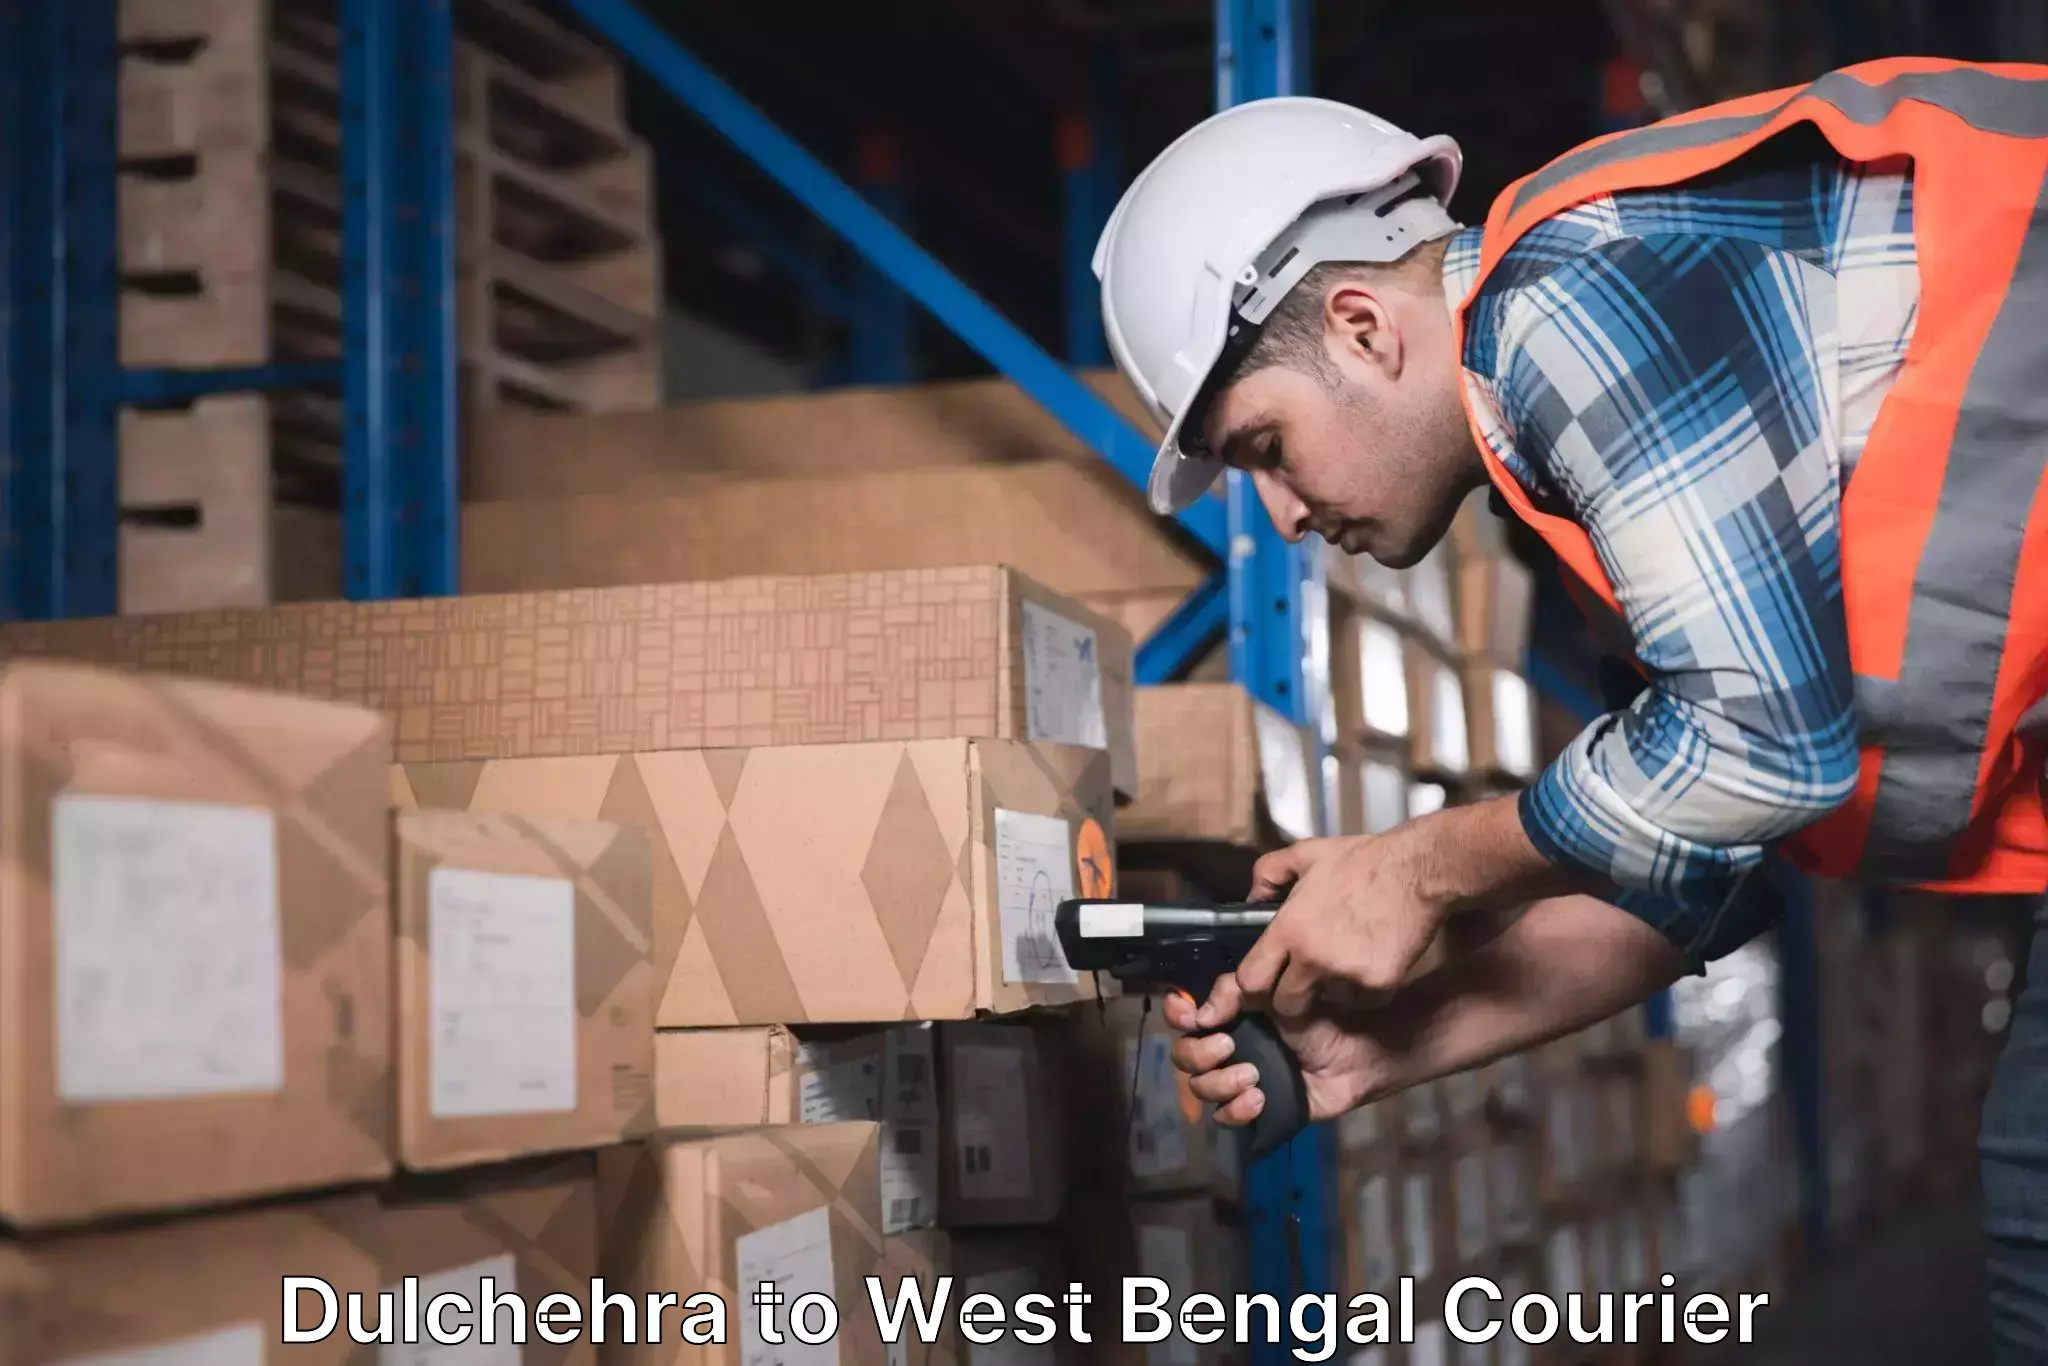 Urban courier service Dulchehra to West Bengal